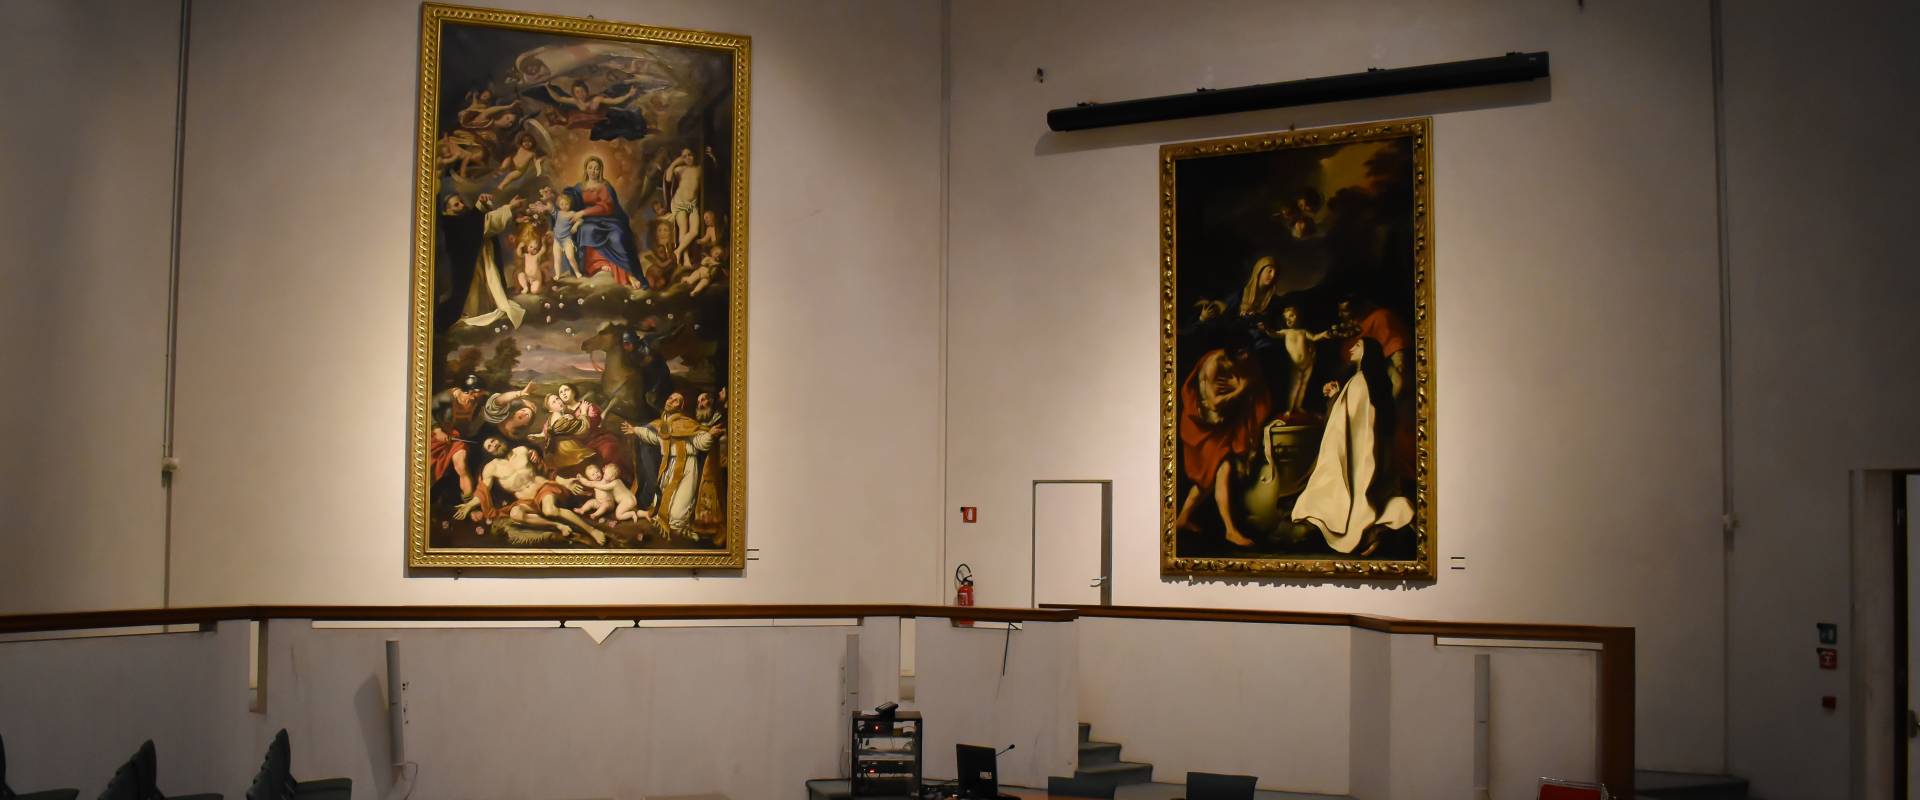 Aula Gnudi, Pinacoteca Nazionale di Bologna photo by Nicola Quirico